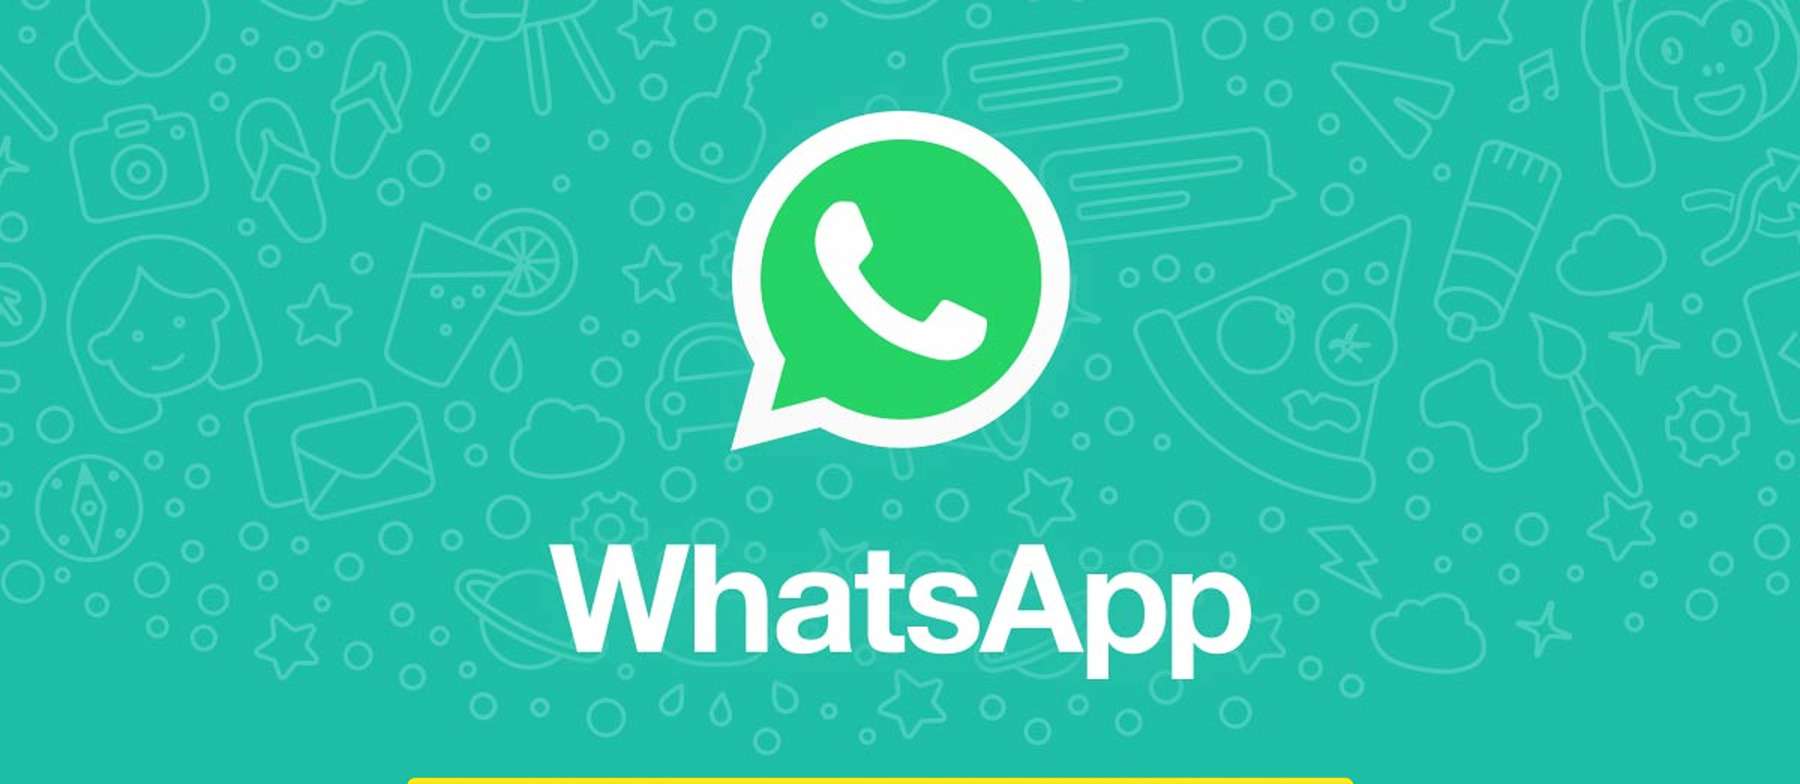 WhatsApp Web fica fora do ar e internet brinca: 'Foi com Deus' - Reprodução WhatsApp Web